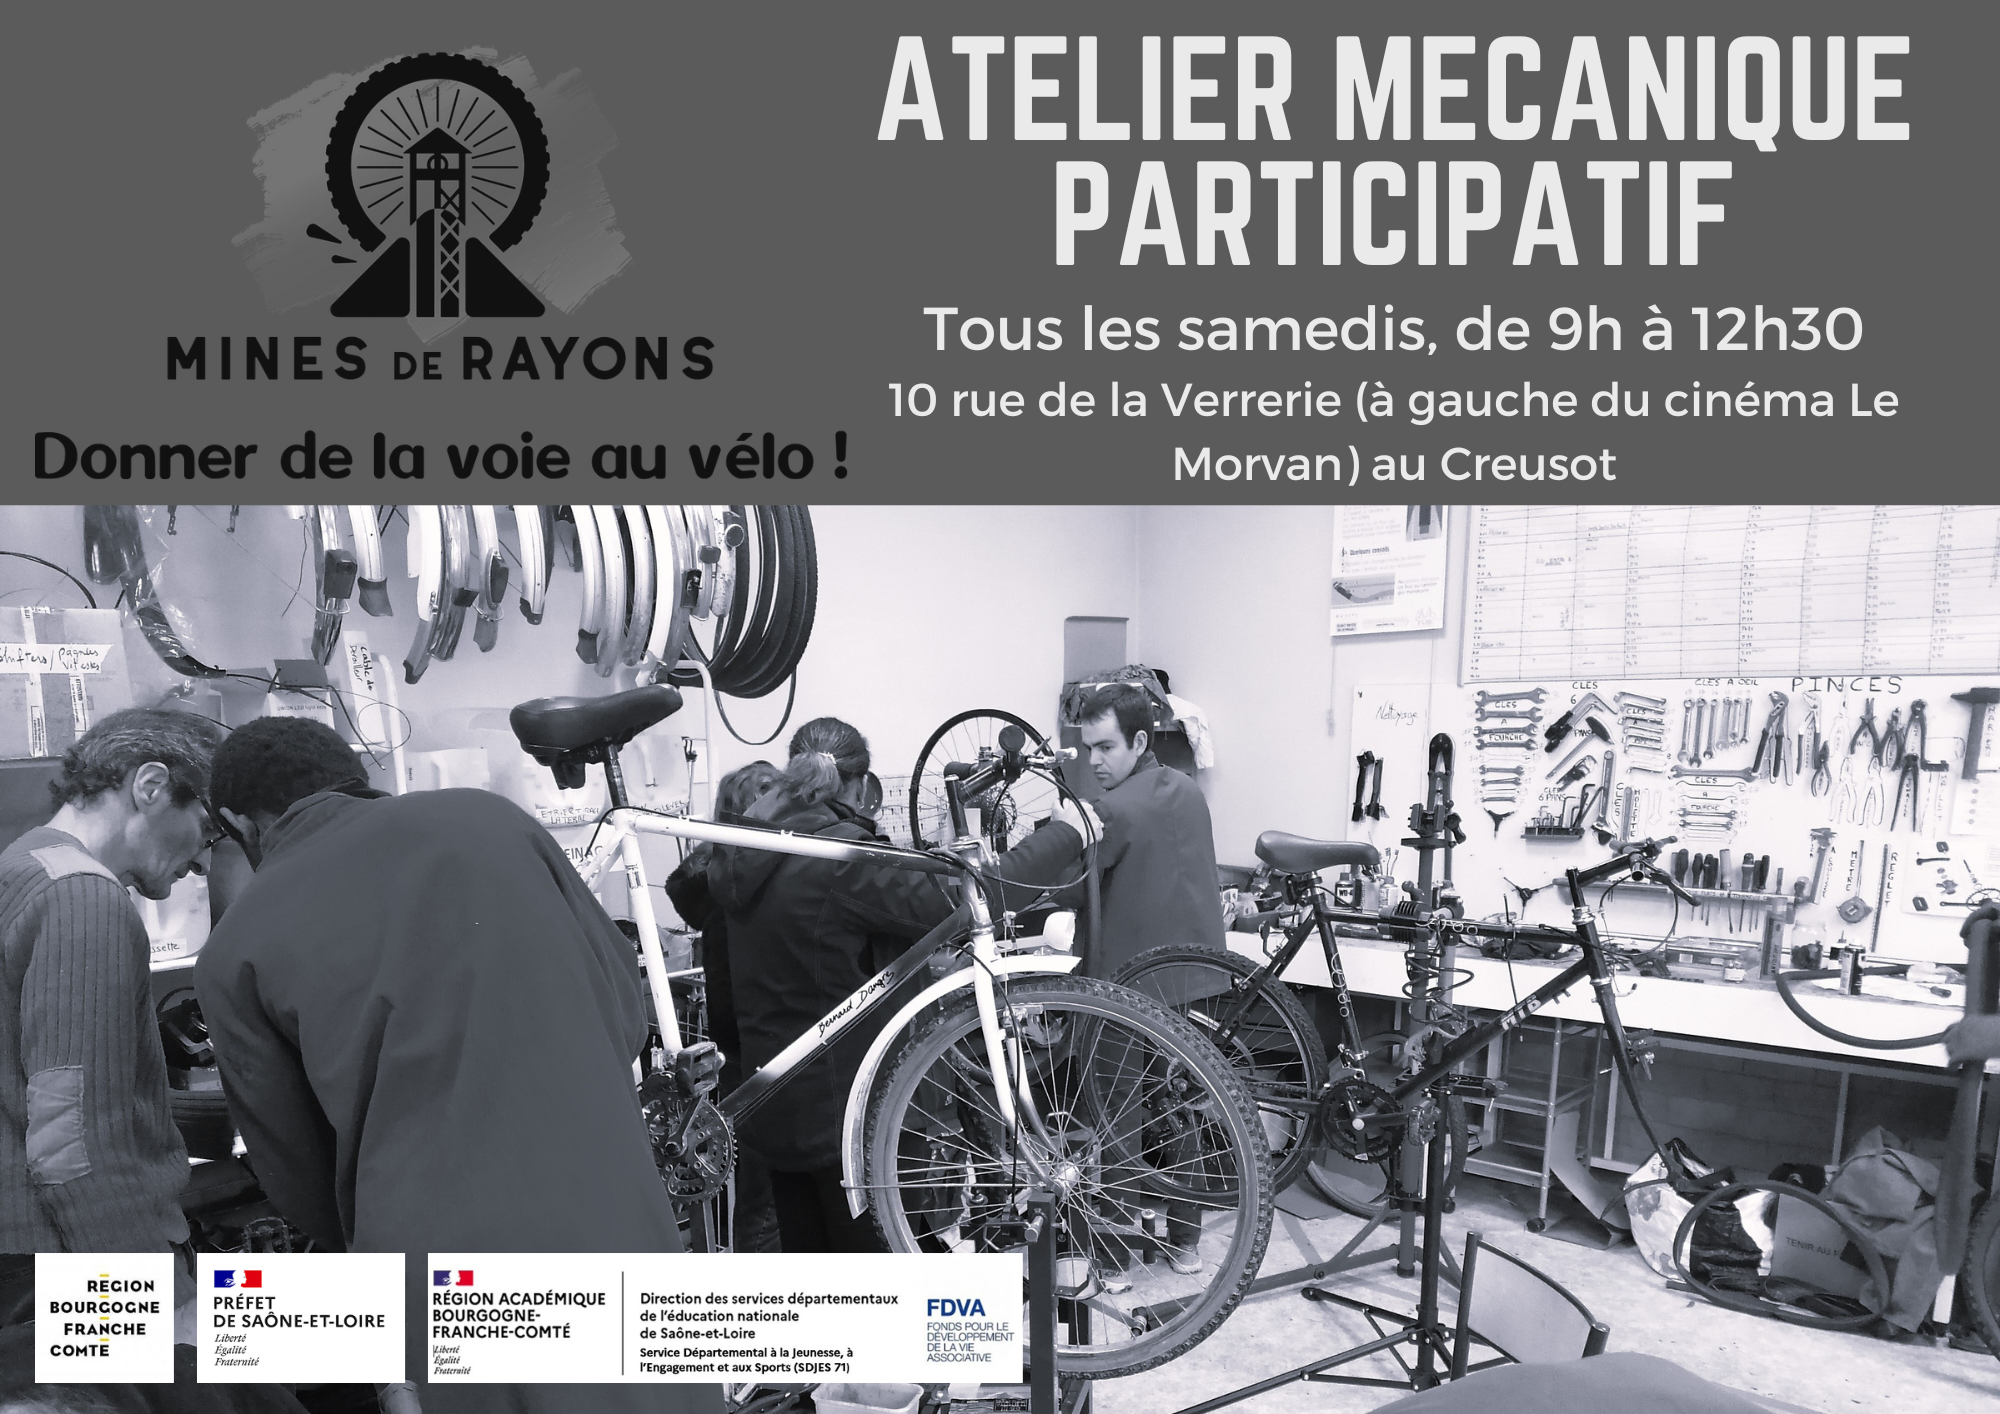 Atelier-mecanique-participatif-du-samedi-logos-financeurs.png